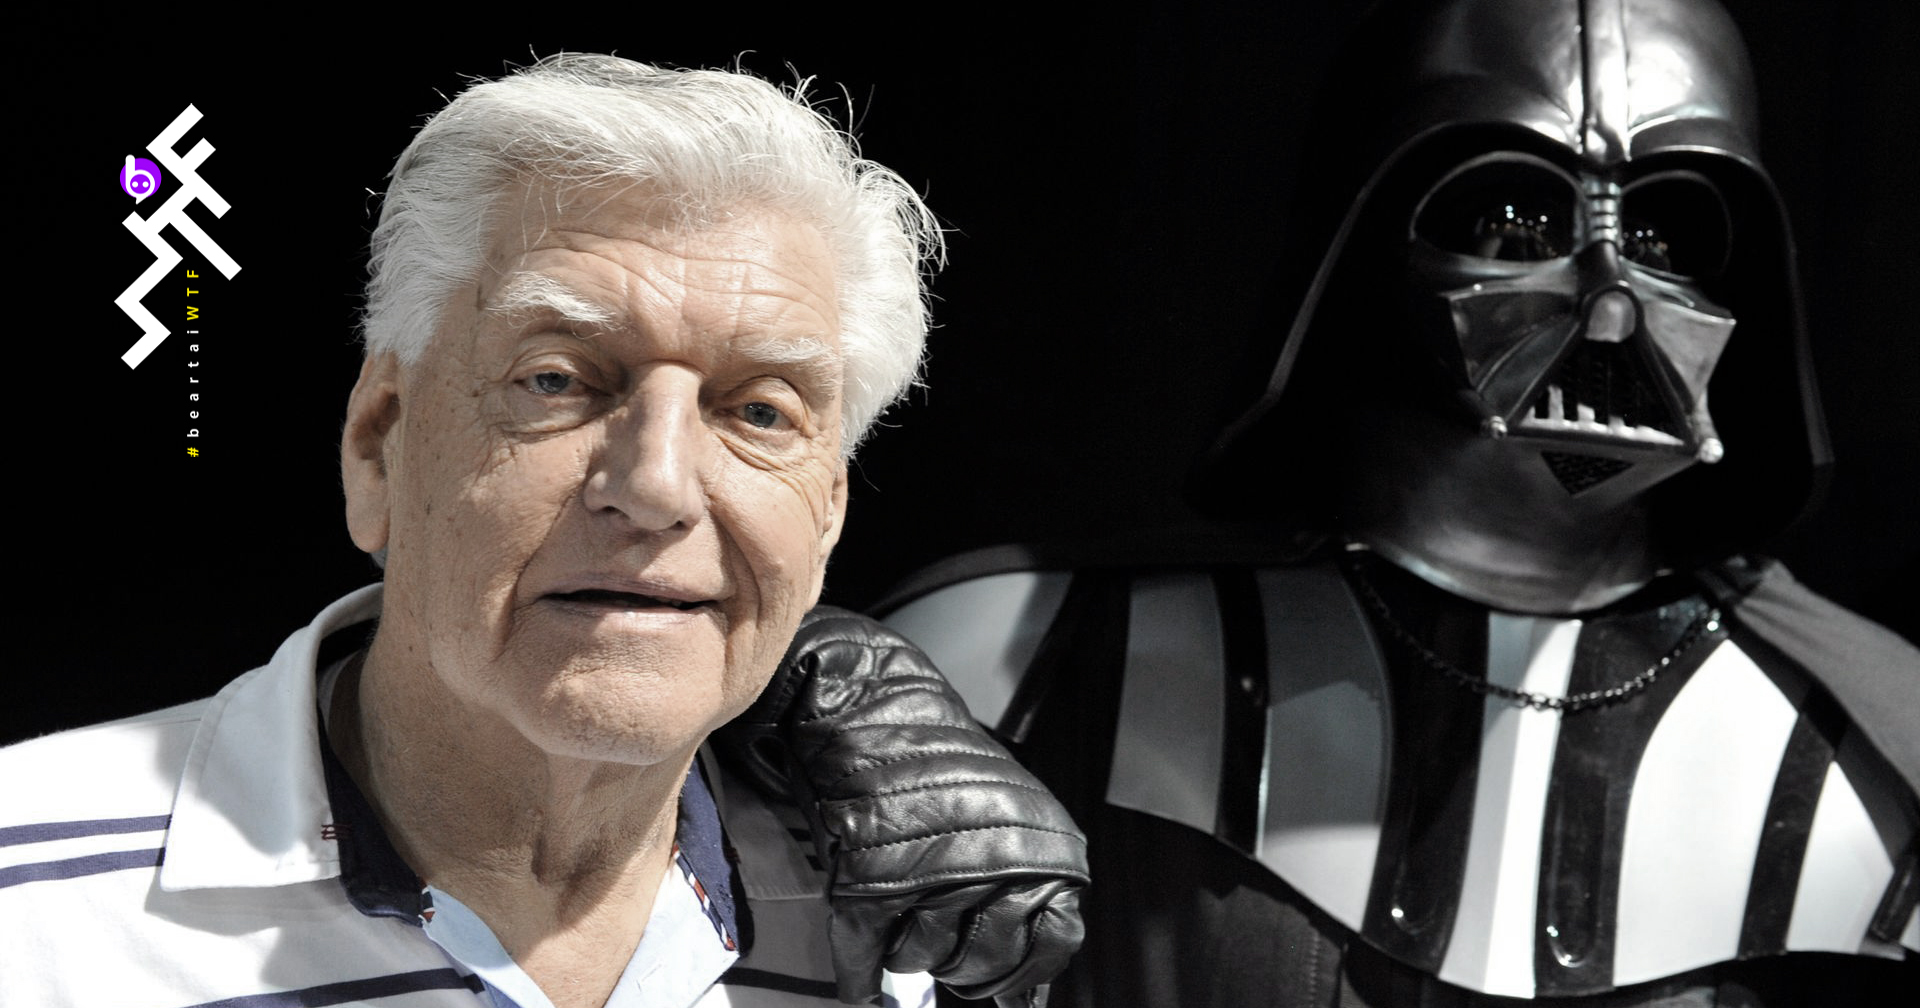 เดวิด พราวส์ ผู้รับบท Darth Vader ดั้งเดิม เสียชีวิตในวัย 85 ปี